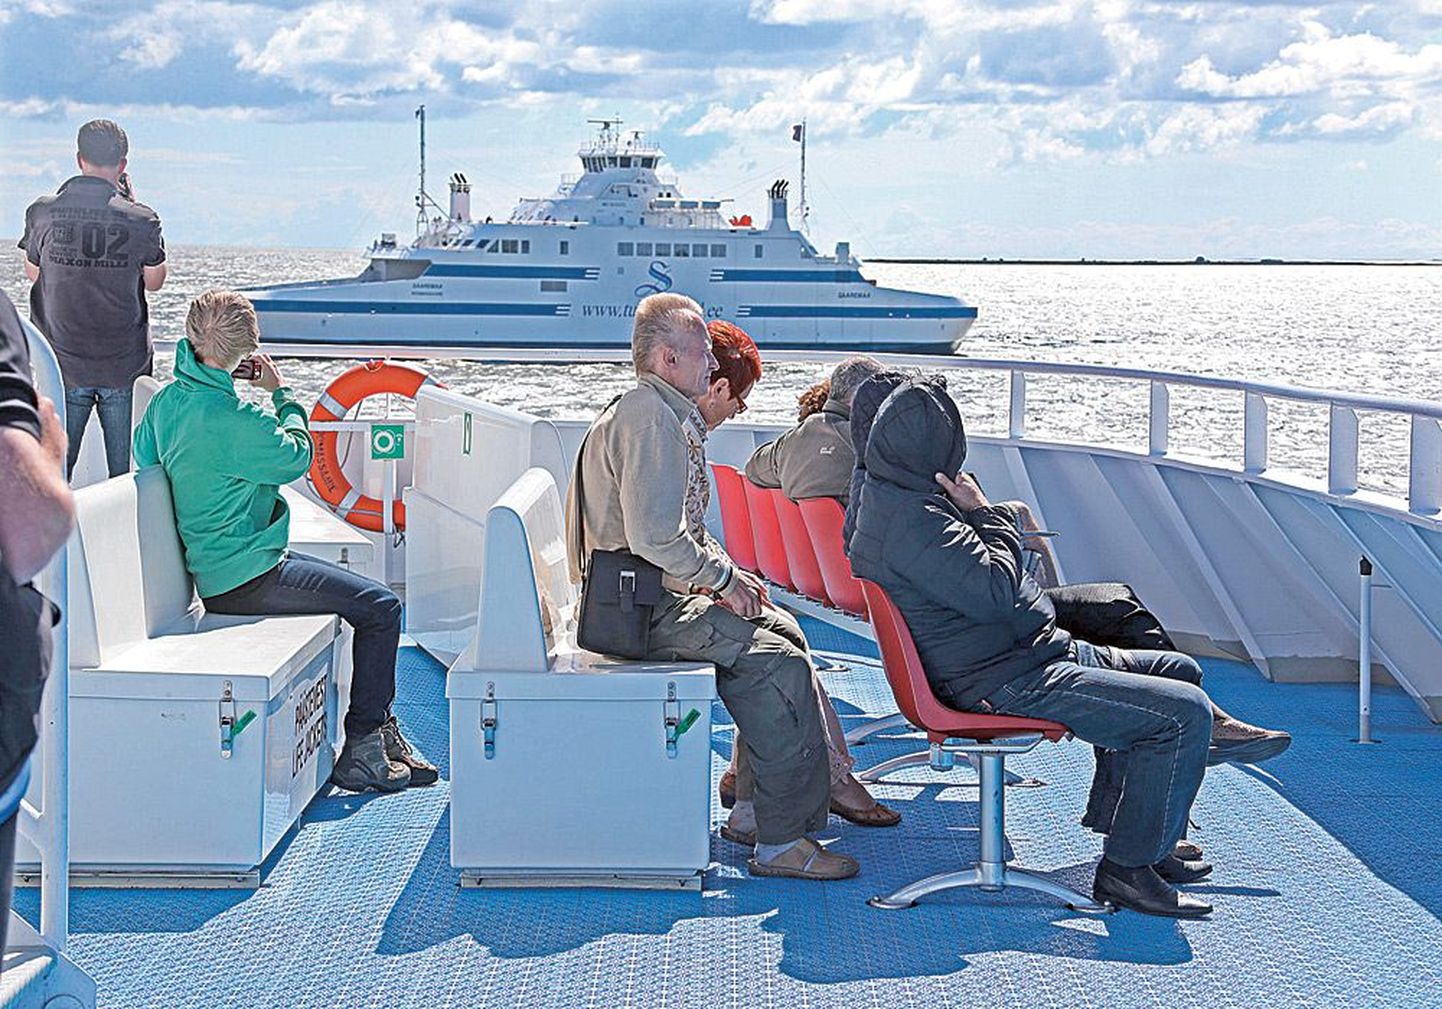 Tallinna Sadam организует конкурс на закупку паромов для маршрутов на острова Сааремаа и Хийумаа. Вероятно, будут куплены те суда, которые и сейчас курсируют между островами.